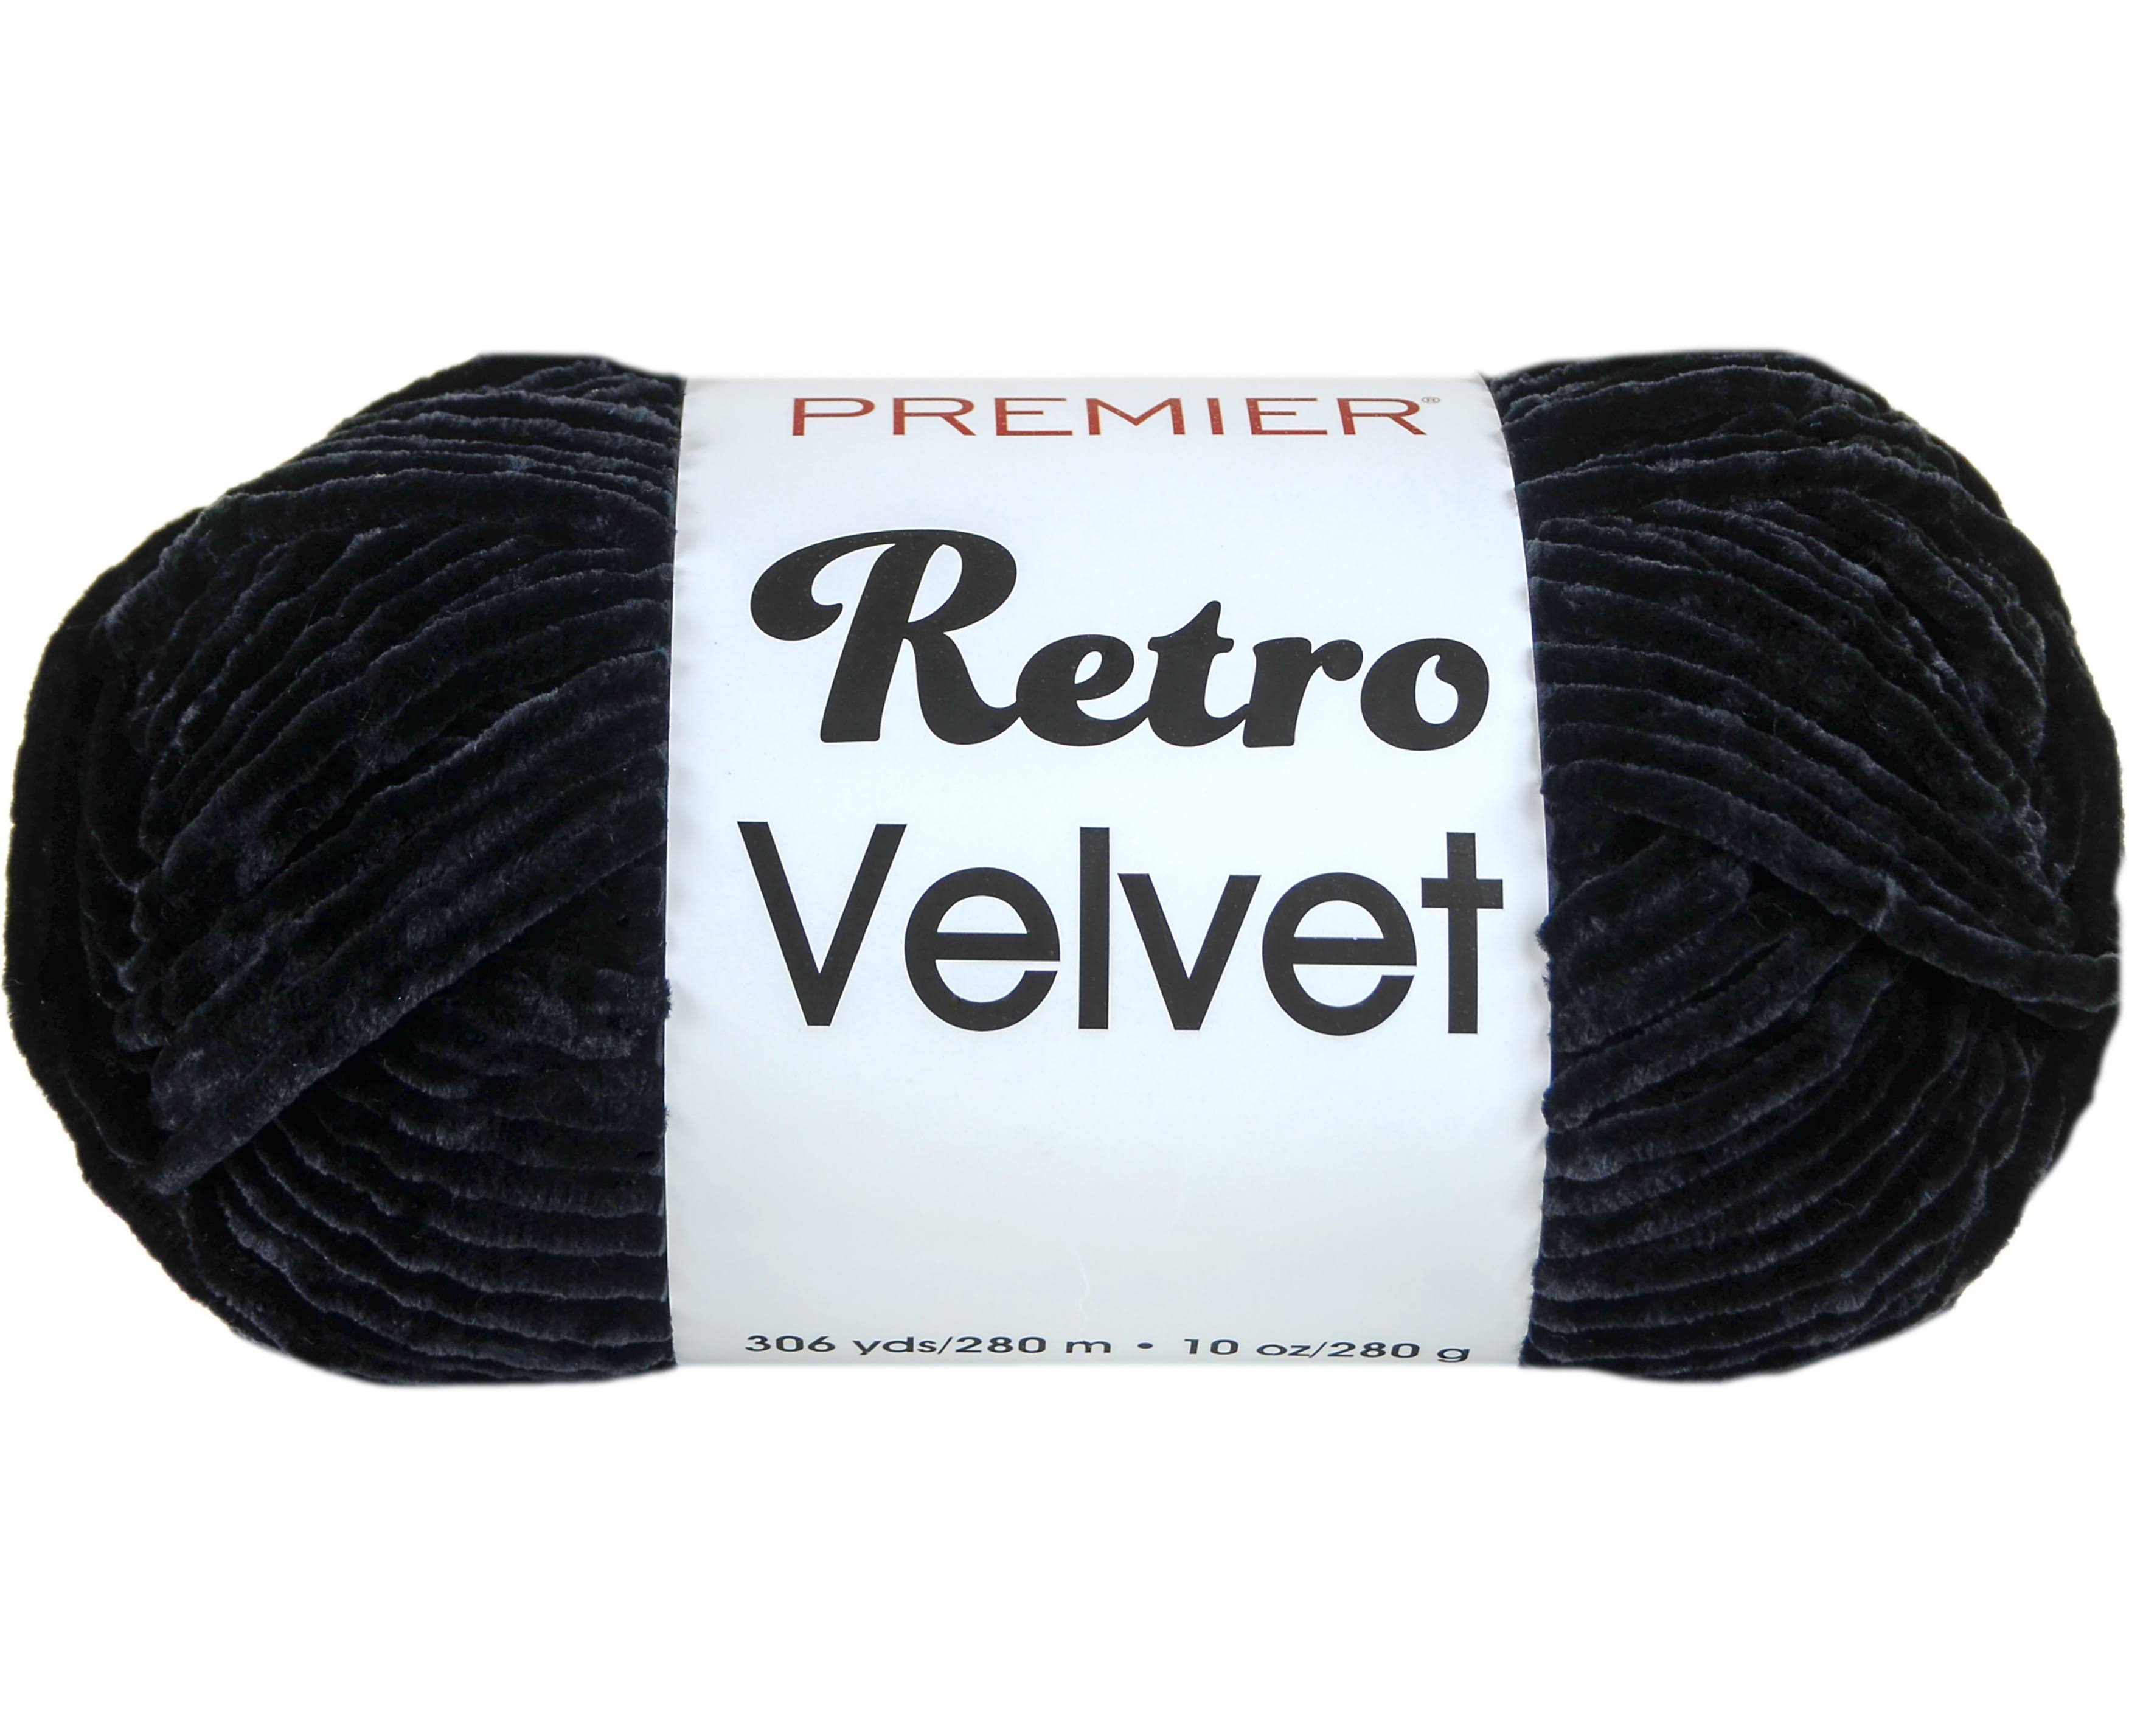 Premier Yarns Retro Velvet Black